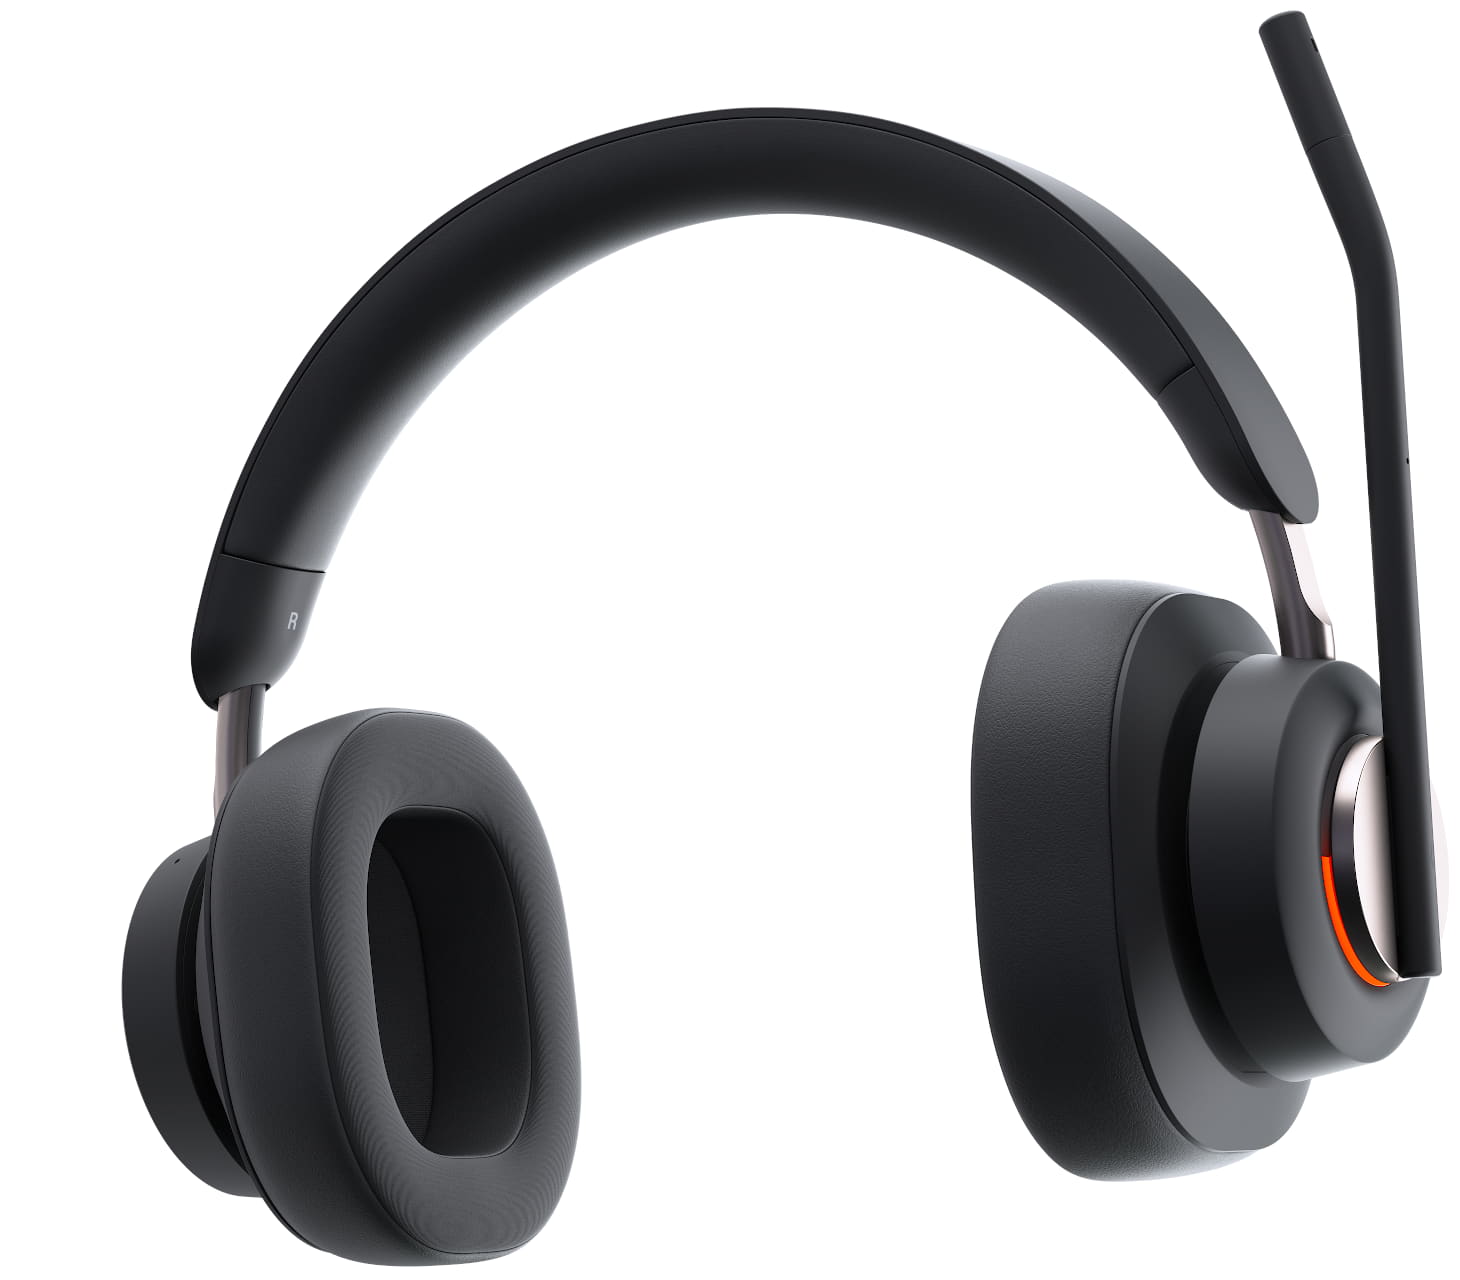 Primo piano della vista frontale delle cuffie over-ear Bluetooth H3000 Kensington con spia “occupato” accesa e microfono in posizione “flip to mute”
                                    